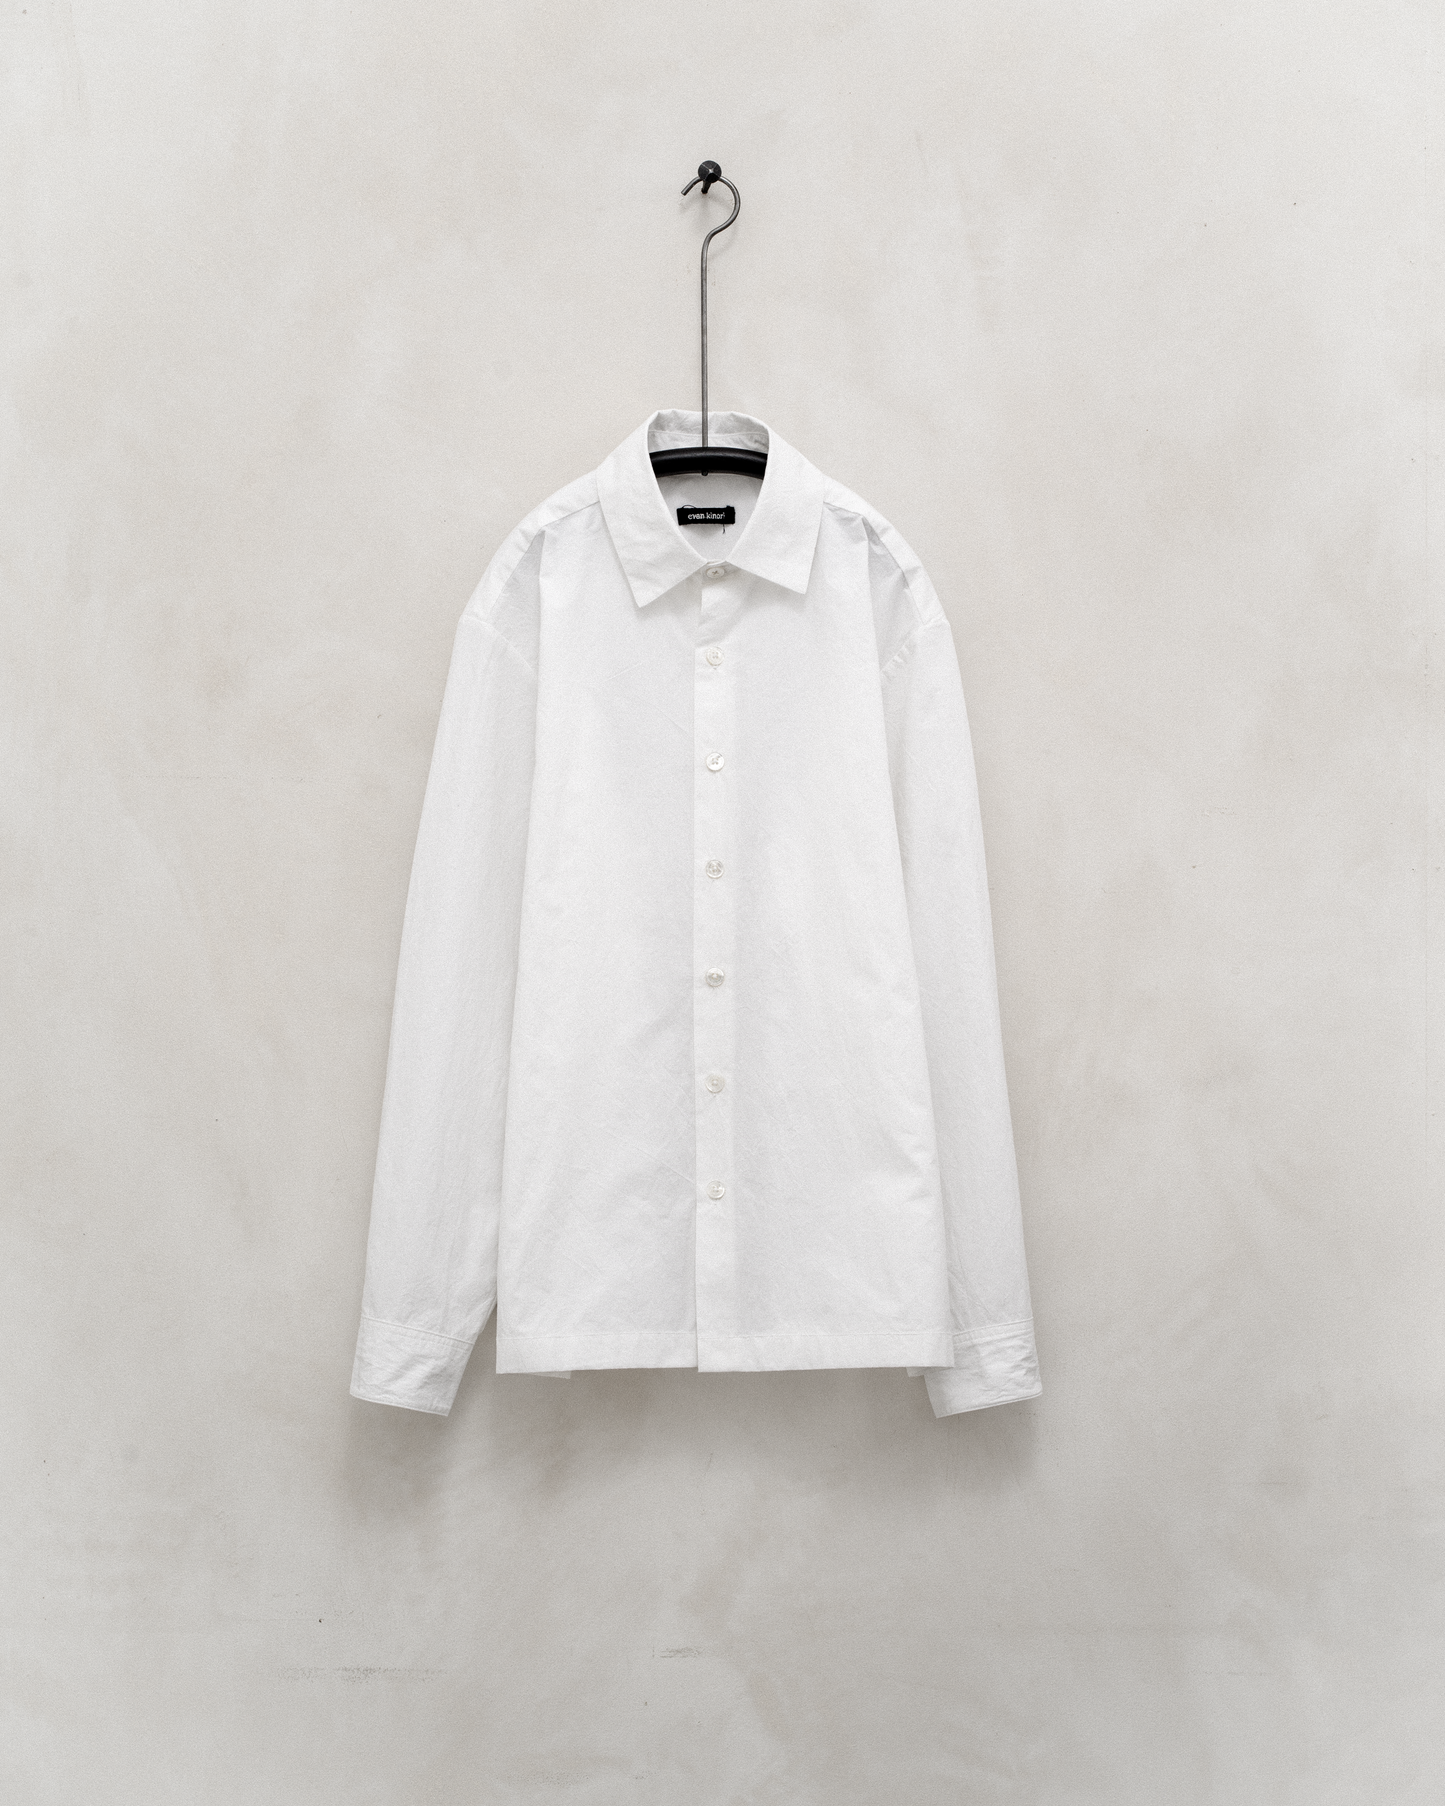 Flat Hem Shirt - Organic Cotton Typewriter Cloth, White